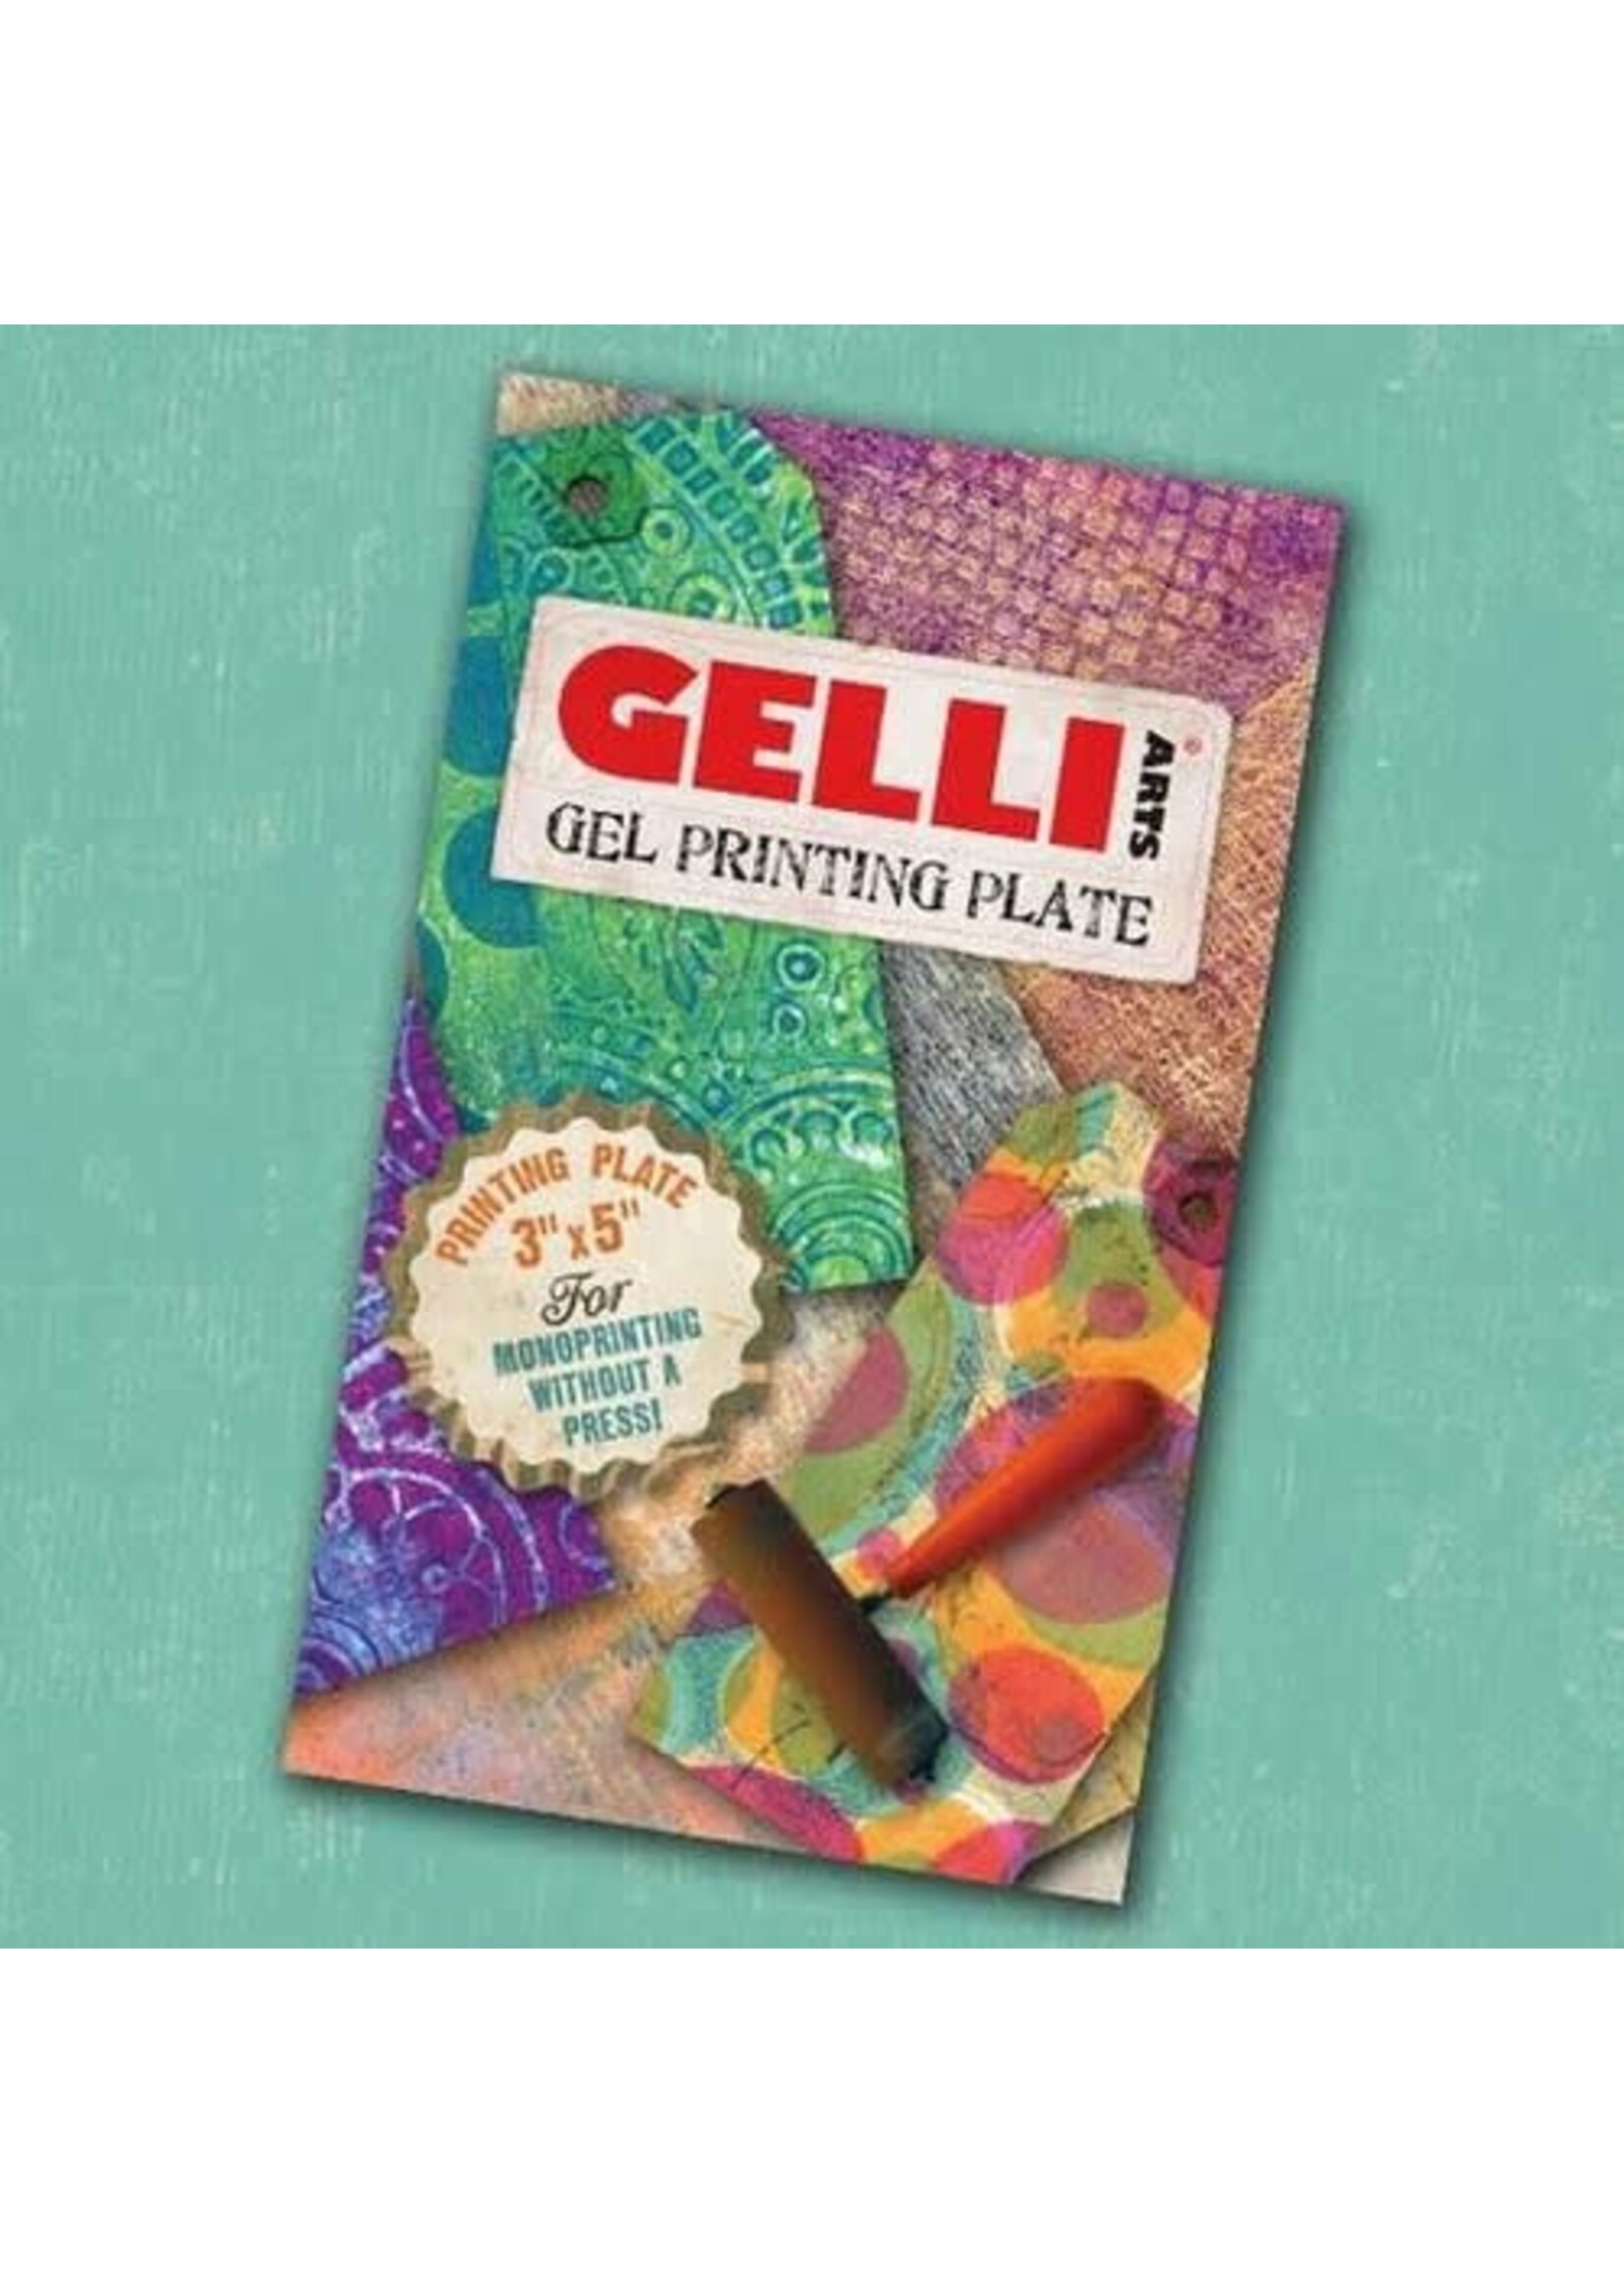 Gelli Gelli Arts - Gel Printing Plate 7.6x12.7cm GEL3X5 Artikelnummer 136001/0712